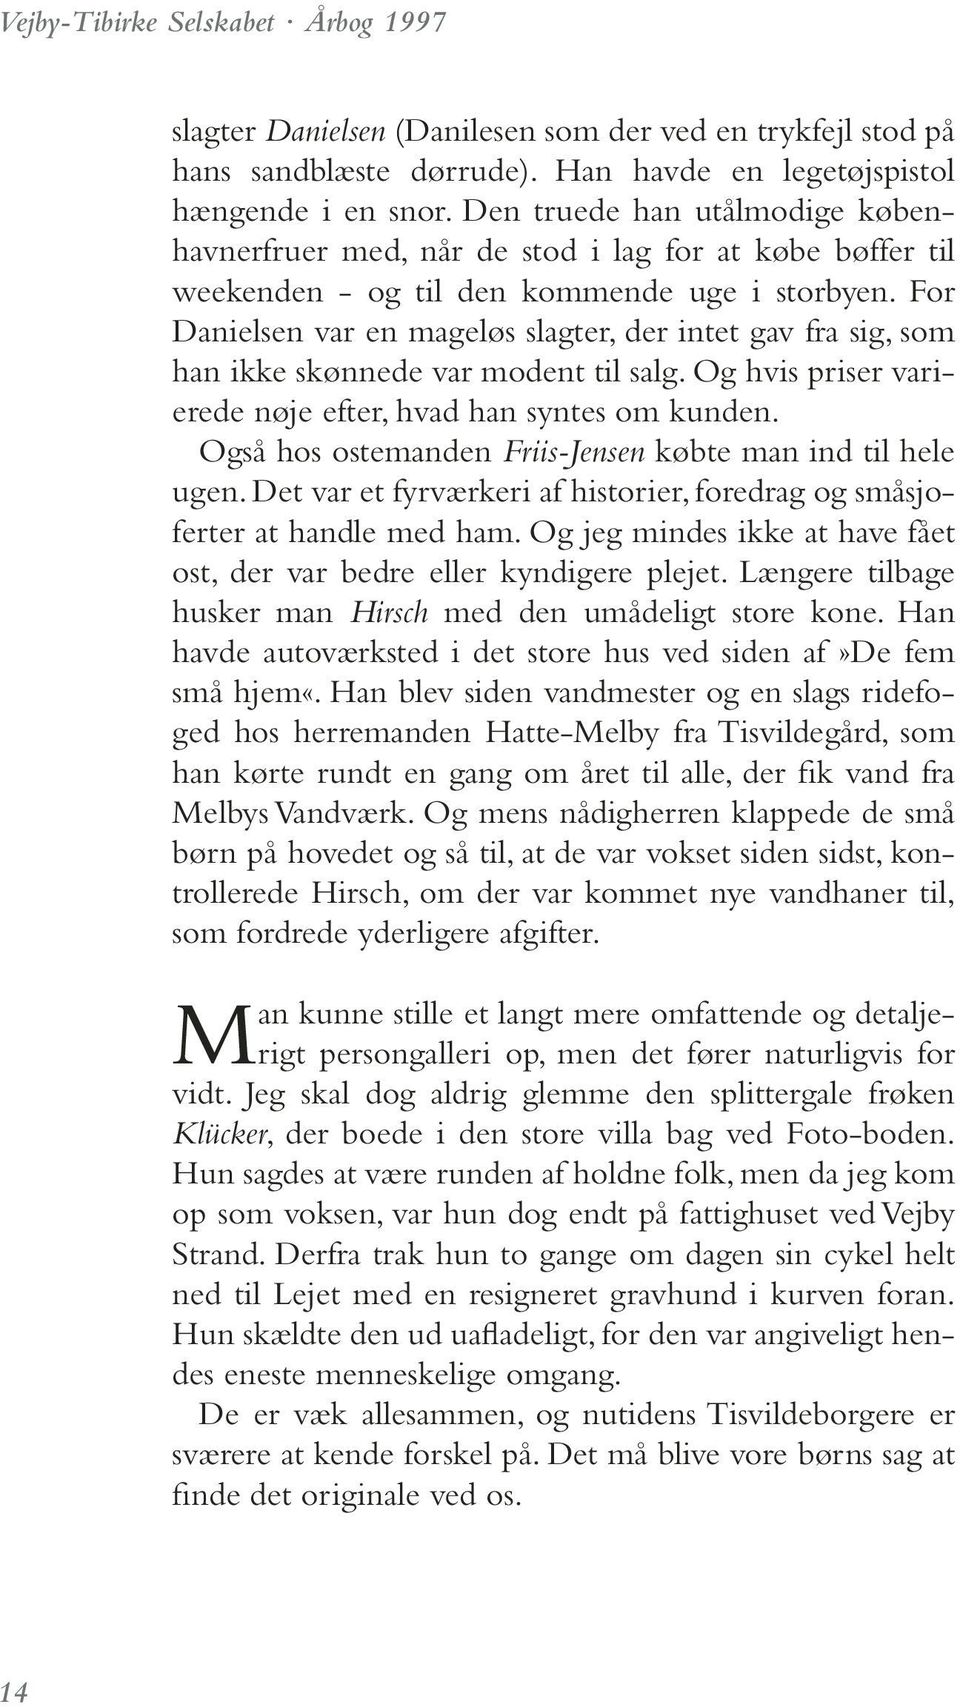 Vejby-Tibirke årbog PDF download